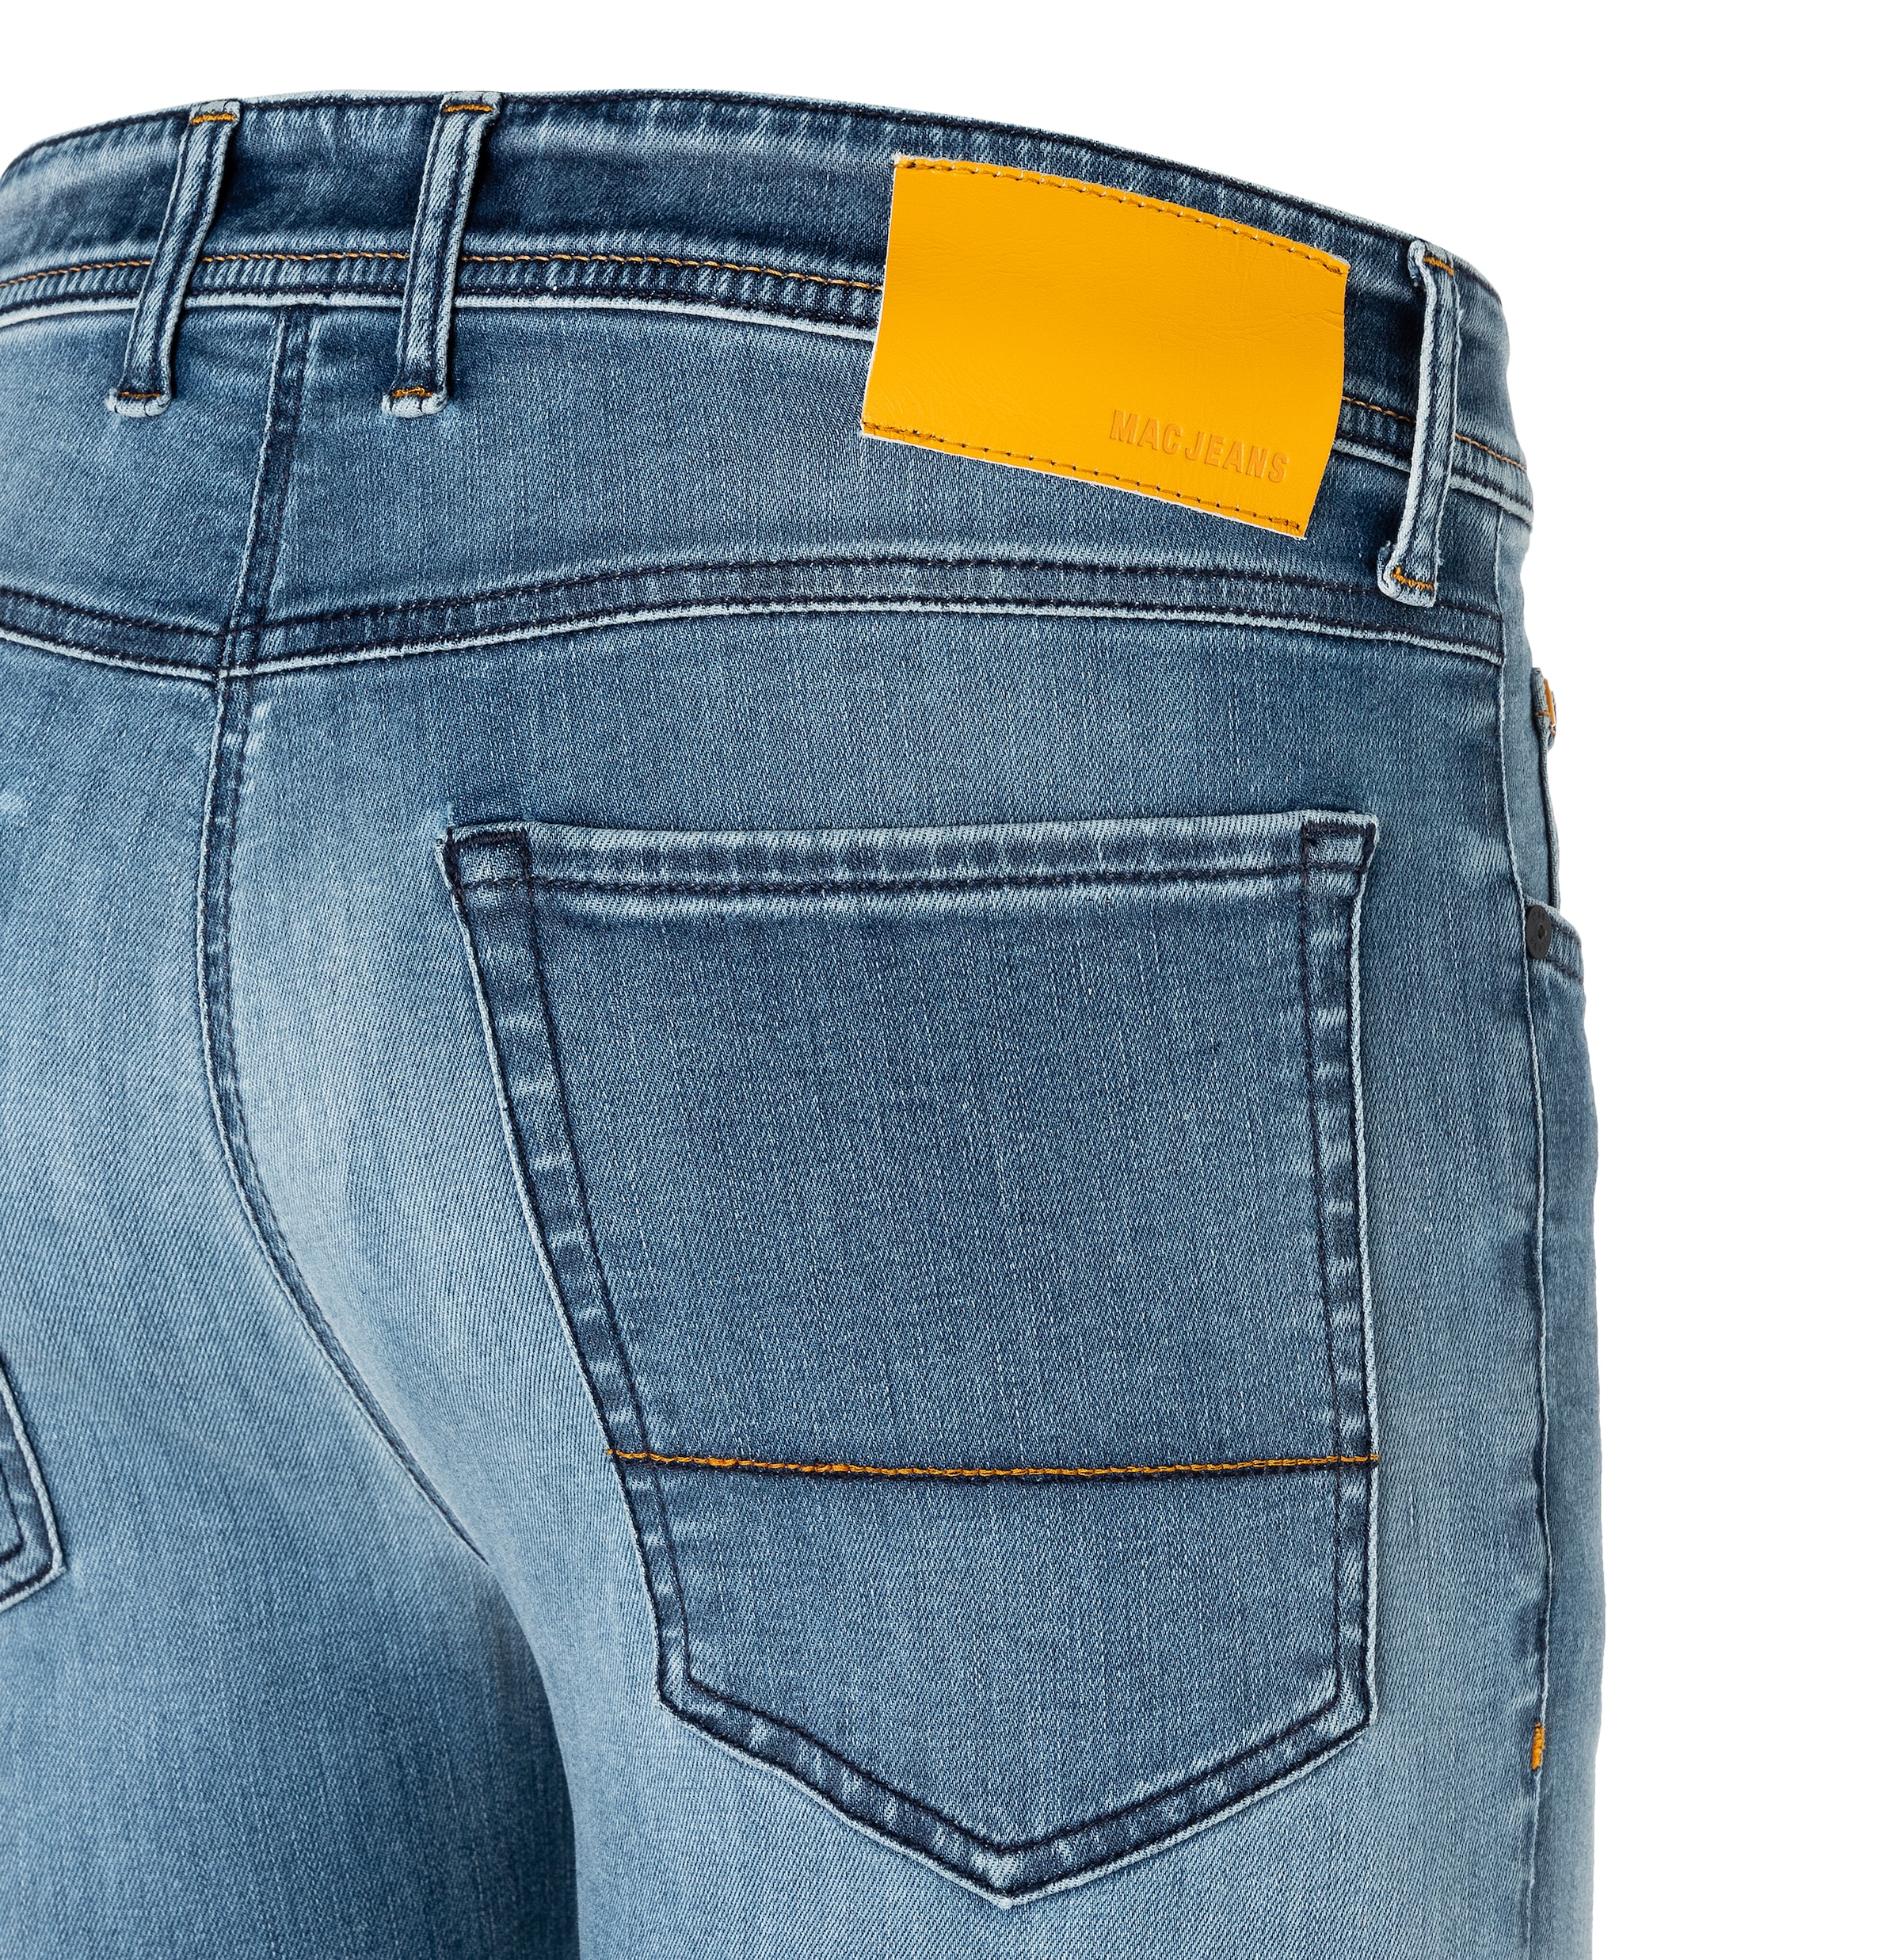 MAC Straight-Jeans »Flexx-Driver«, super elastisch